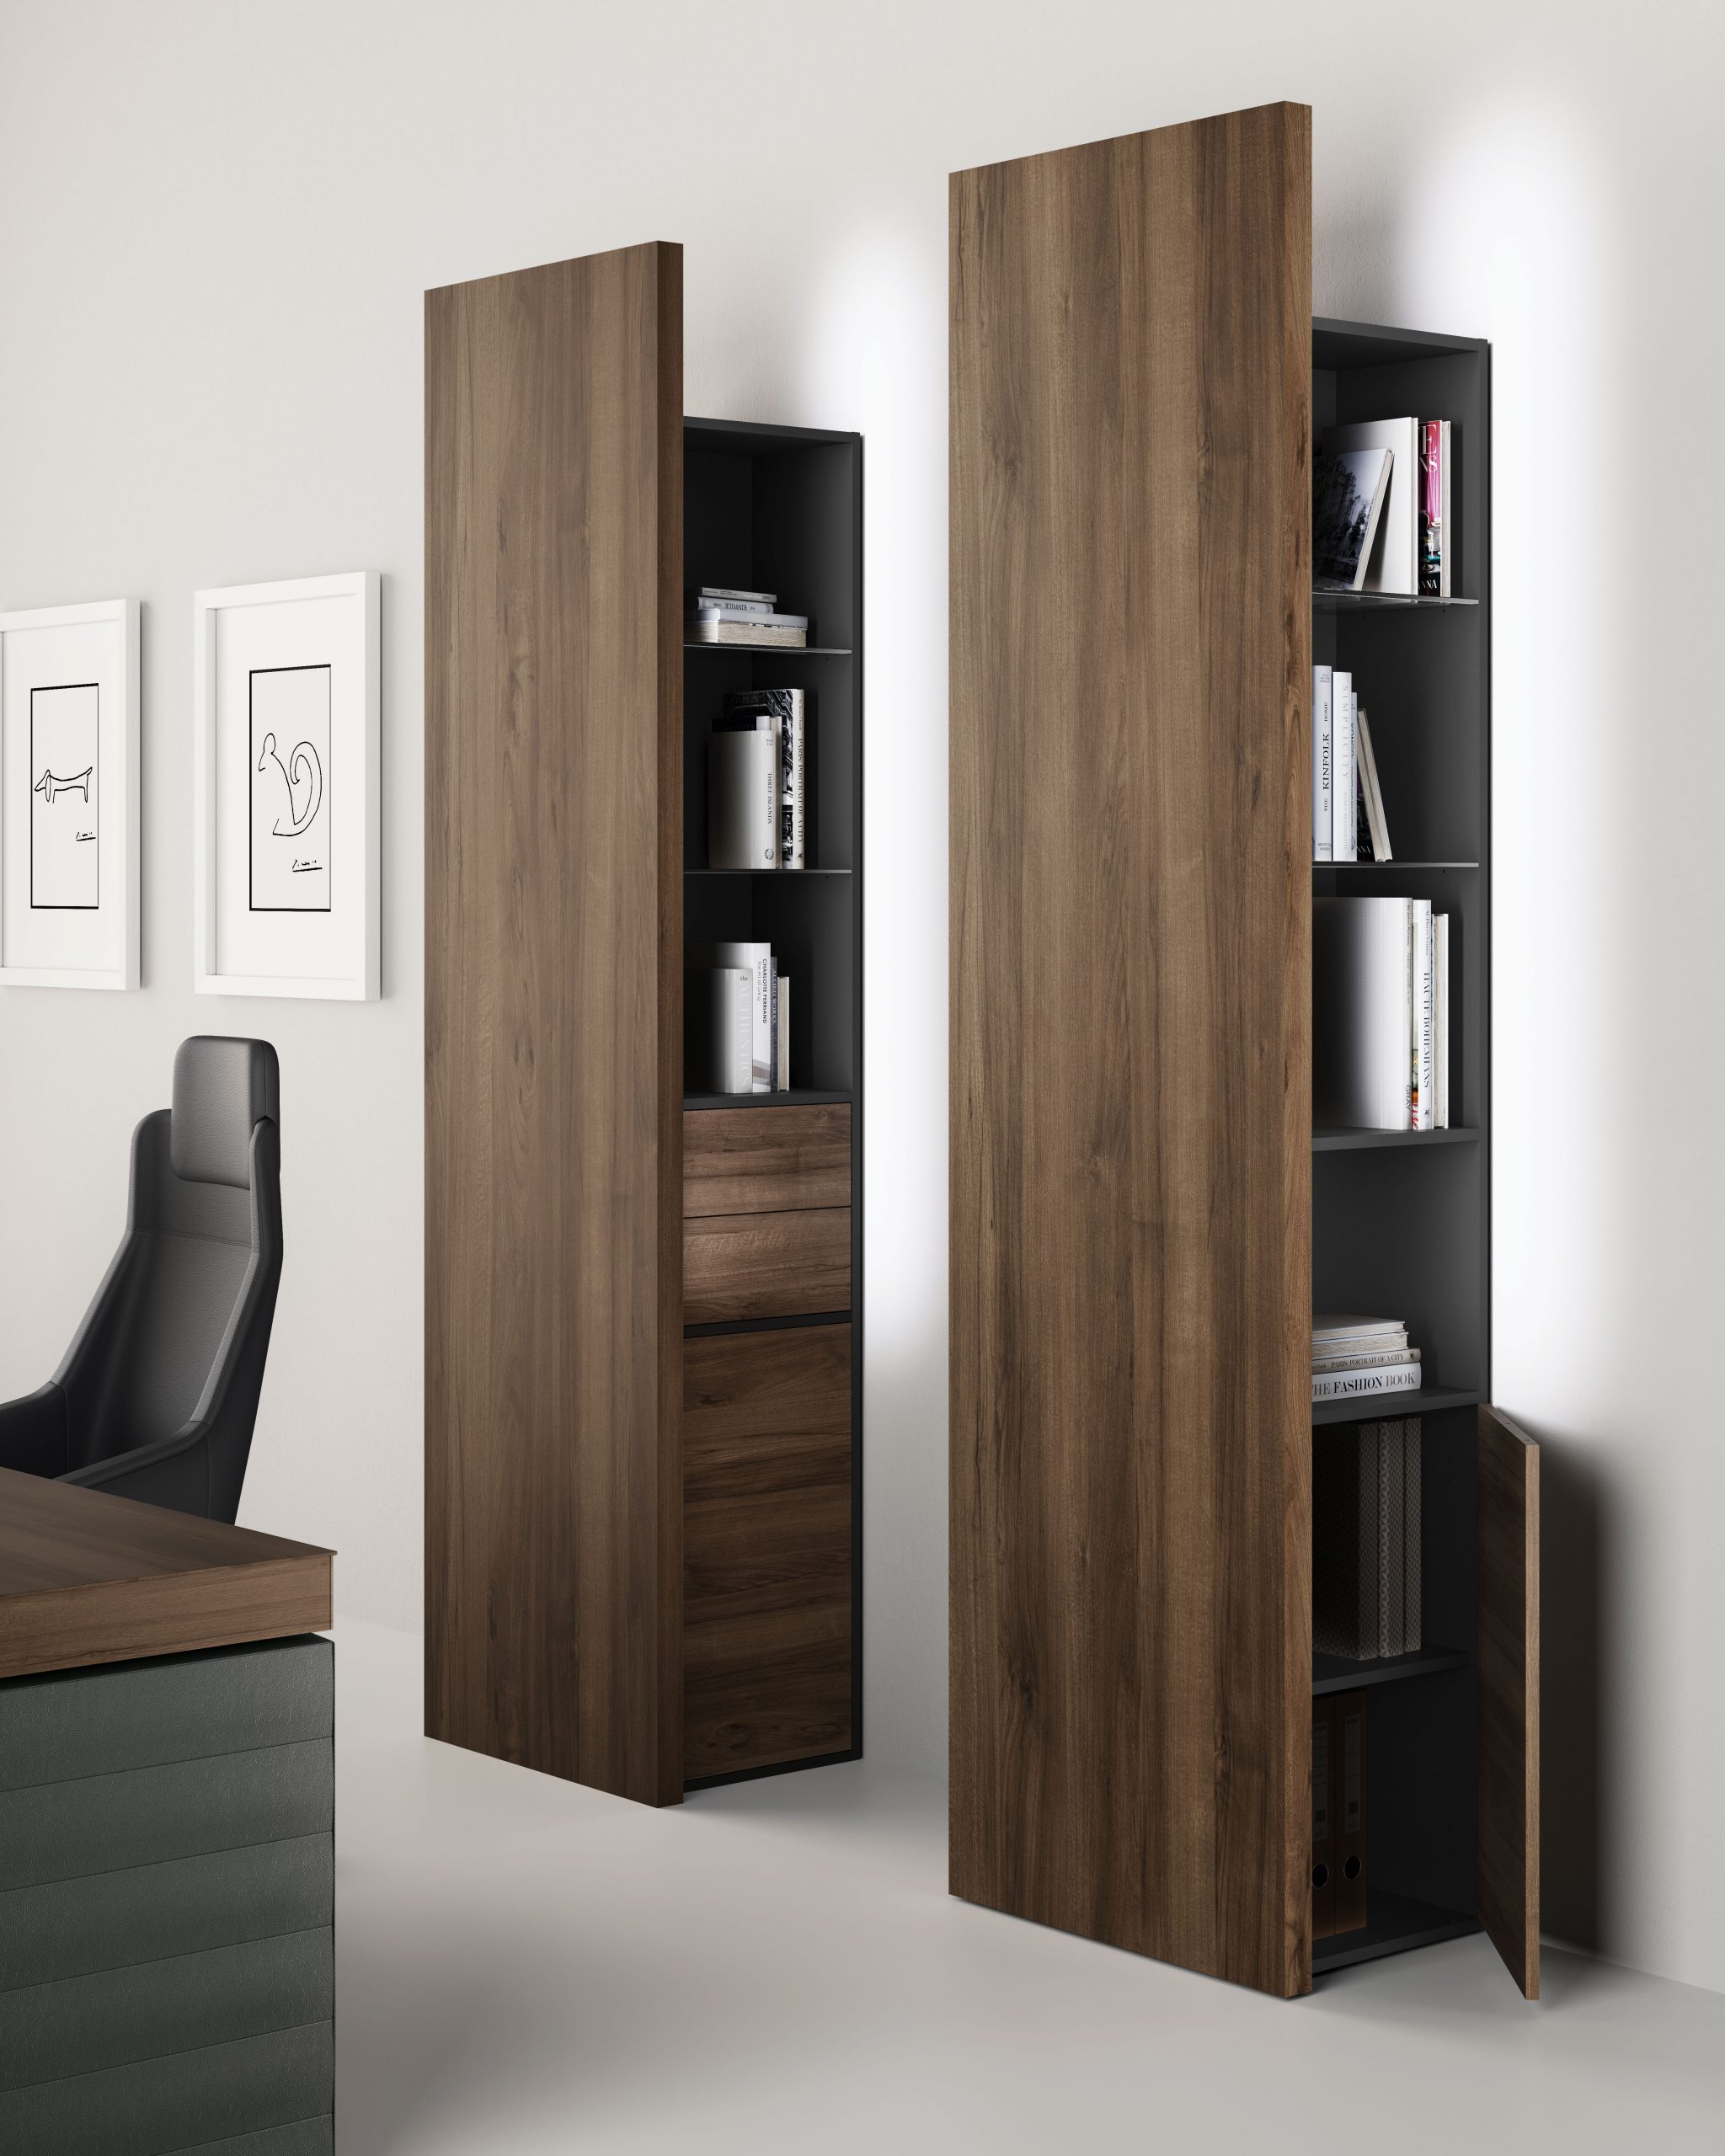 Jera Italian office furniture executive desk - Las Mobili